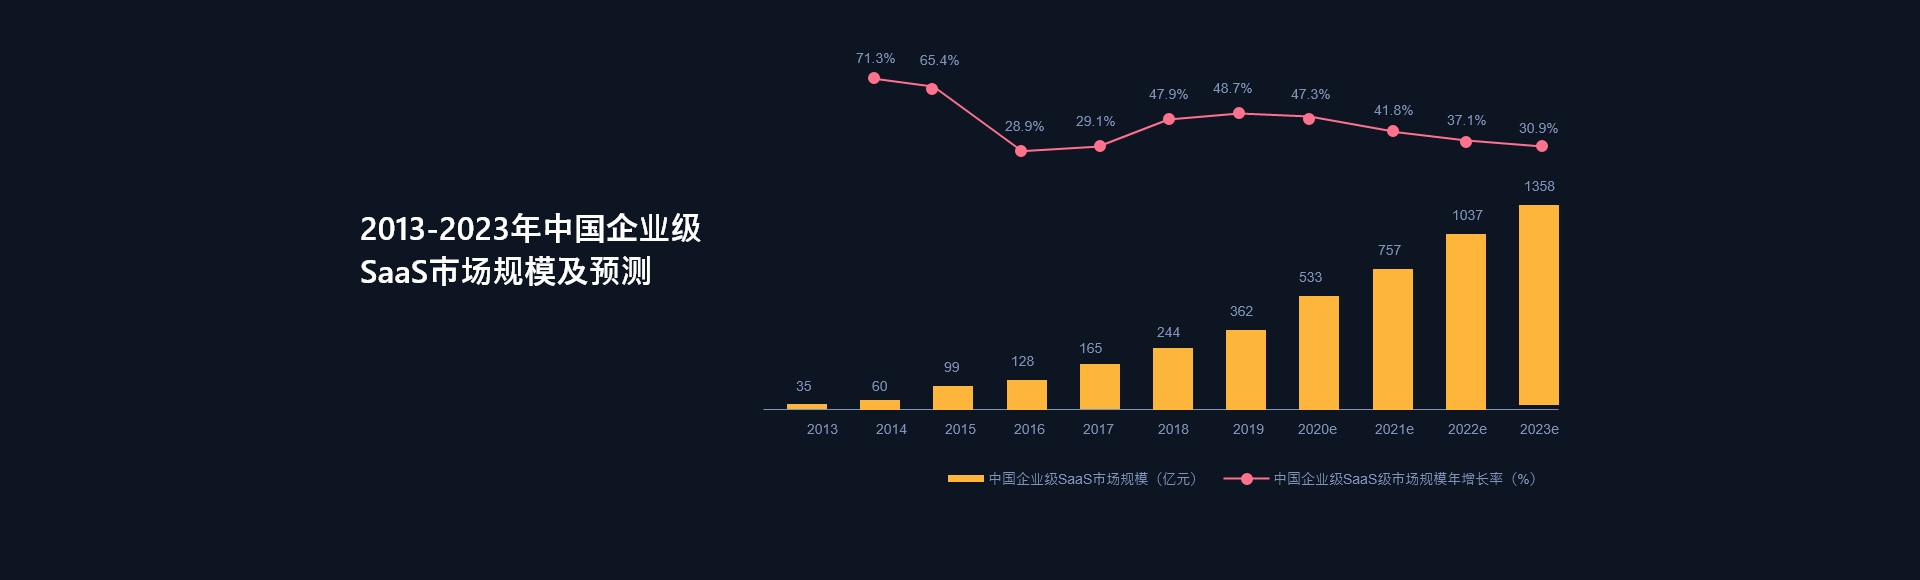 2014-2018年中国企业级SaaS市场规模及结构